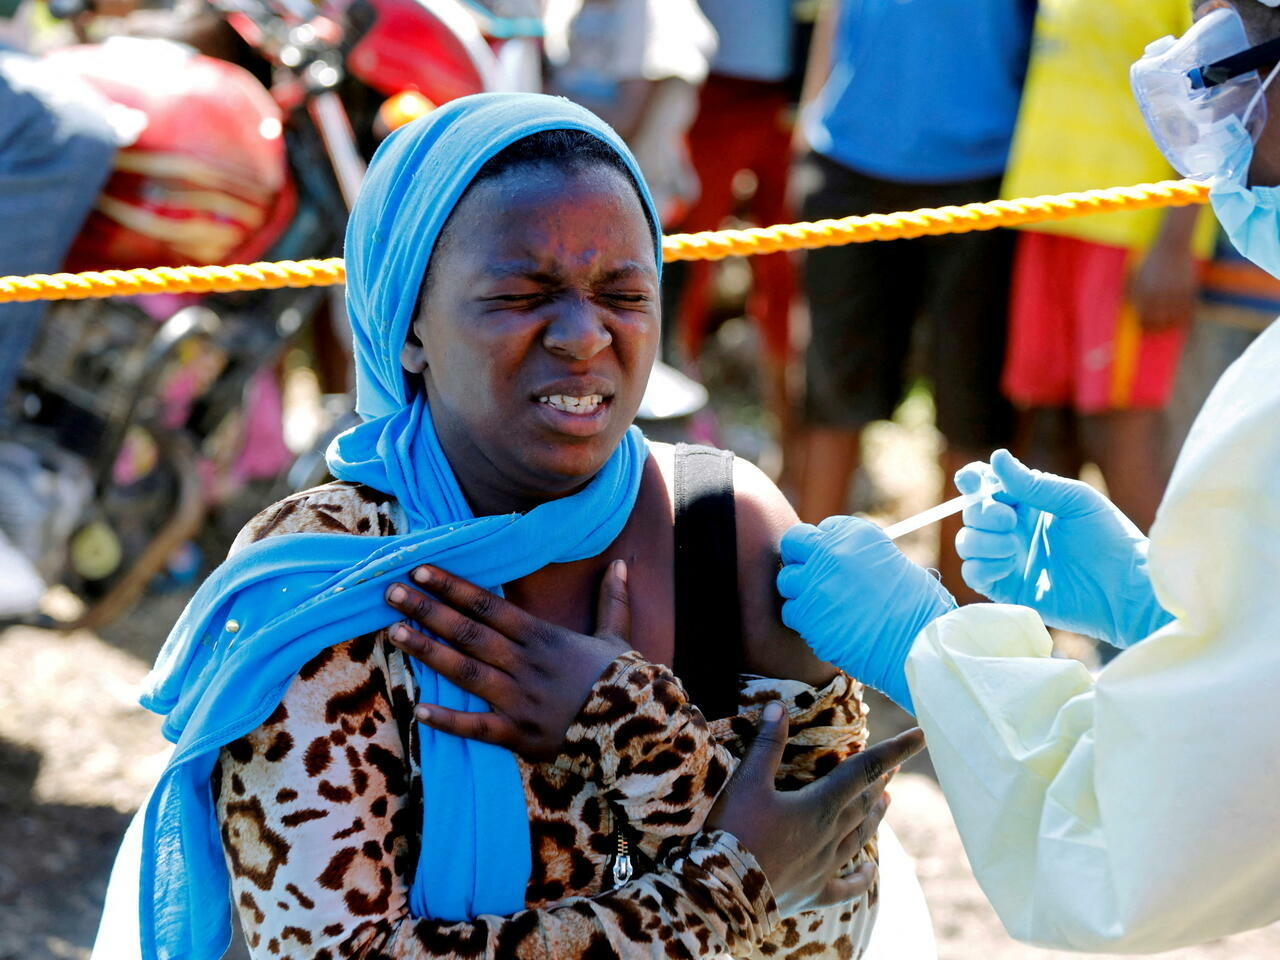 Ebola en RD Congo : l'OMS évoque un risque de propagation régionale et internationale